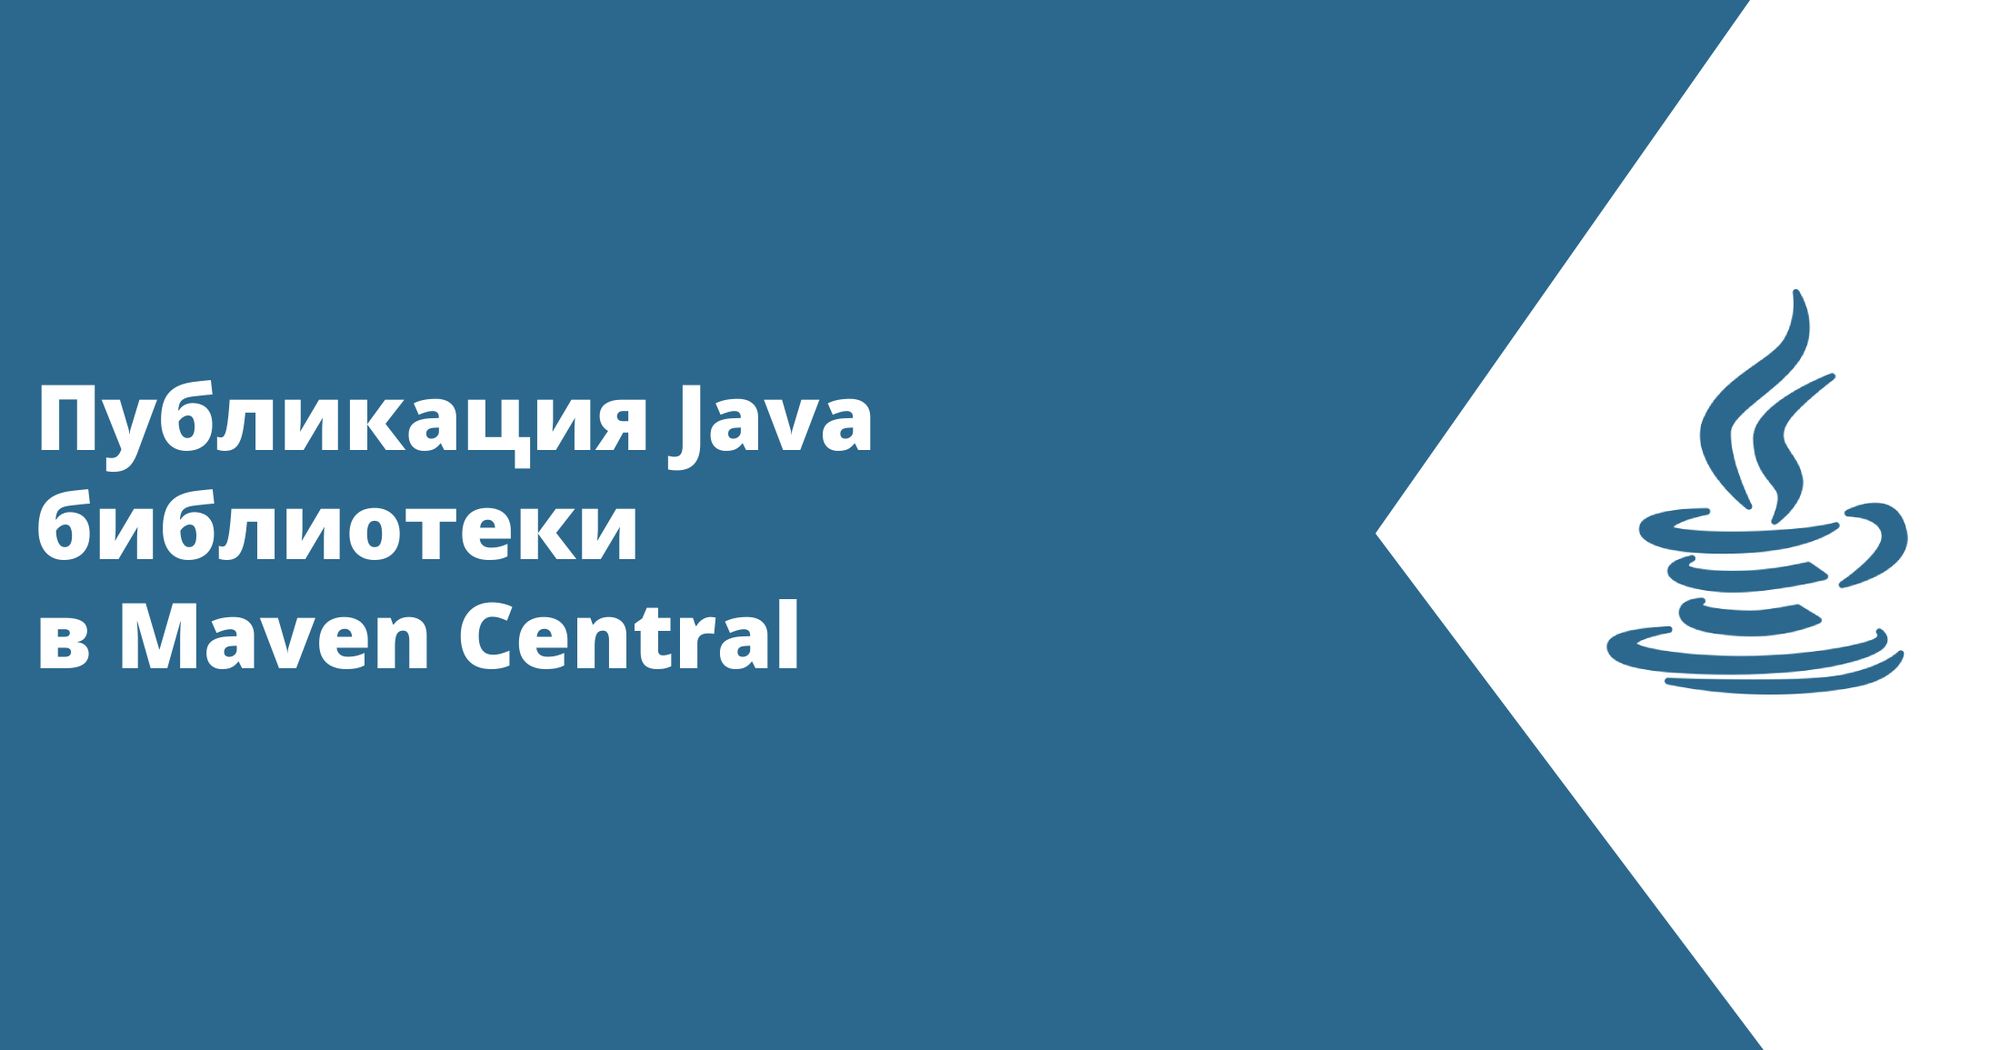 Публикация Java библиотеки в Maven Central